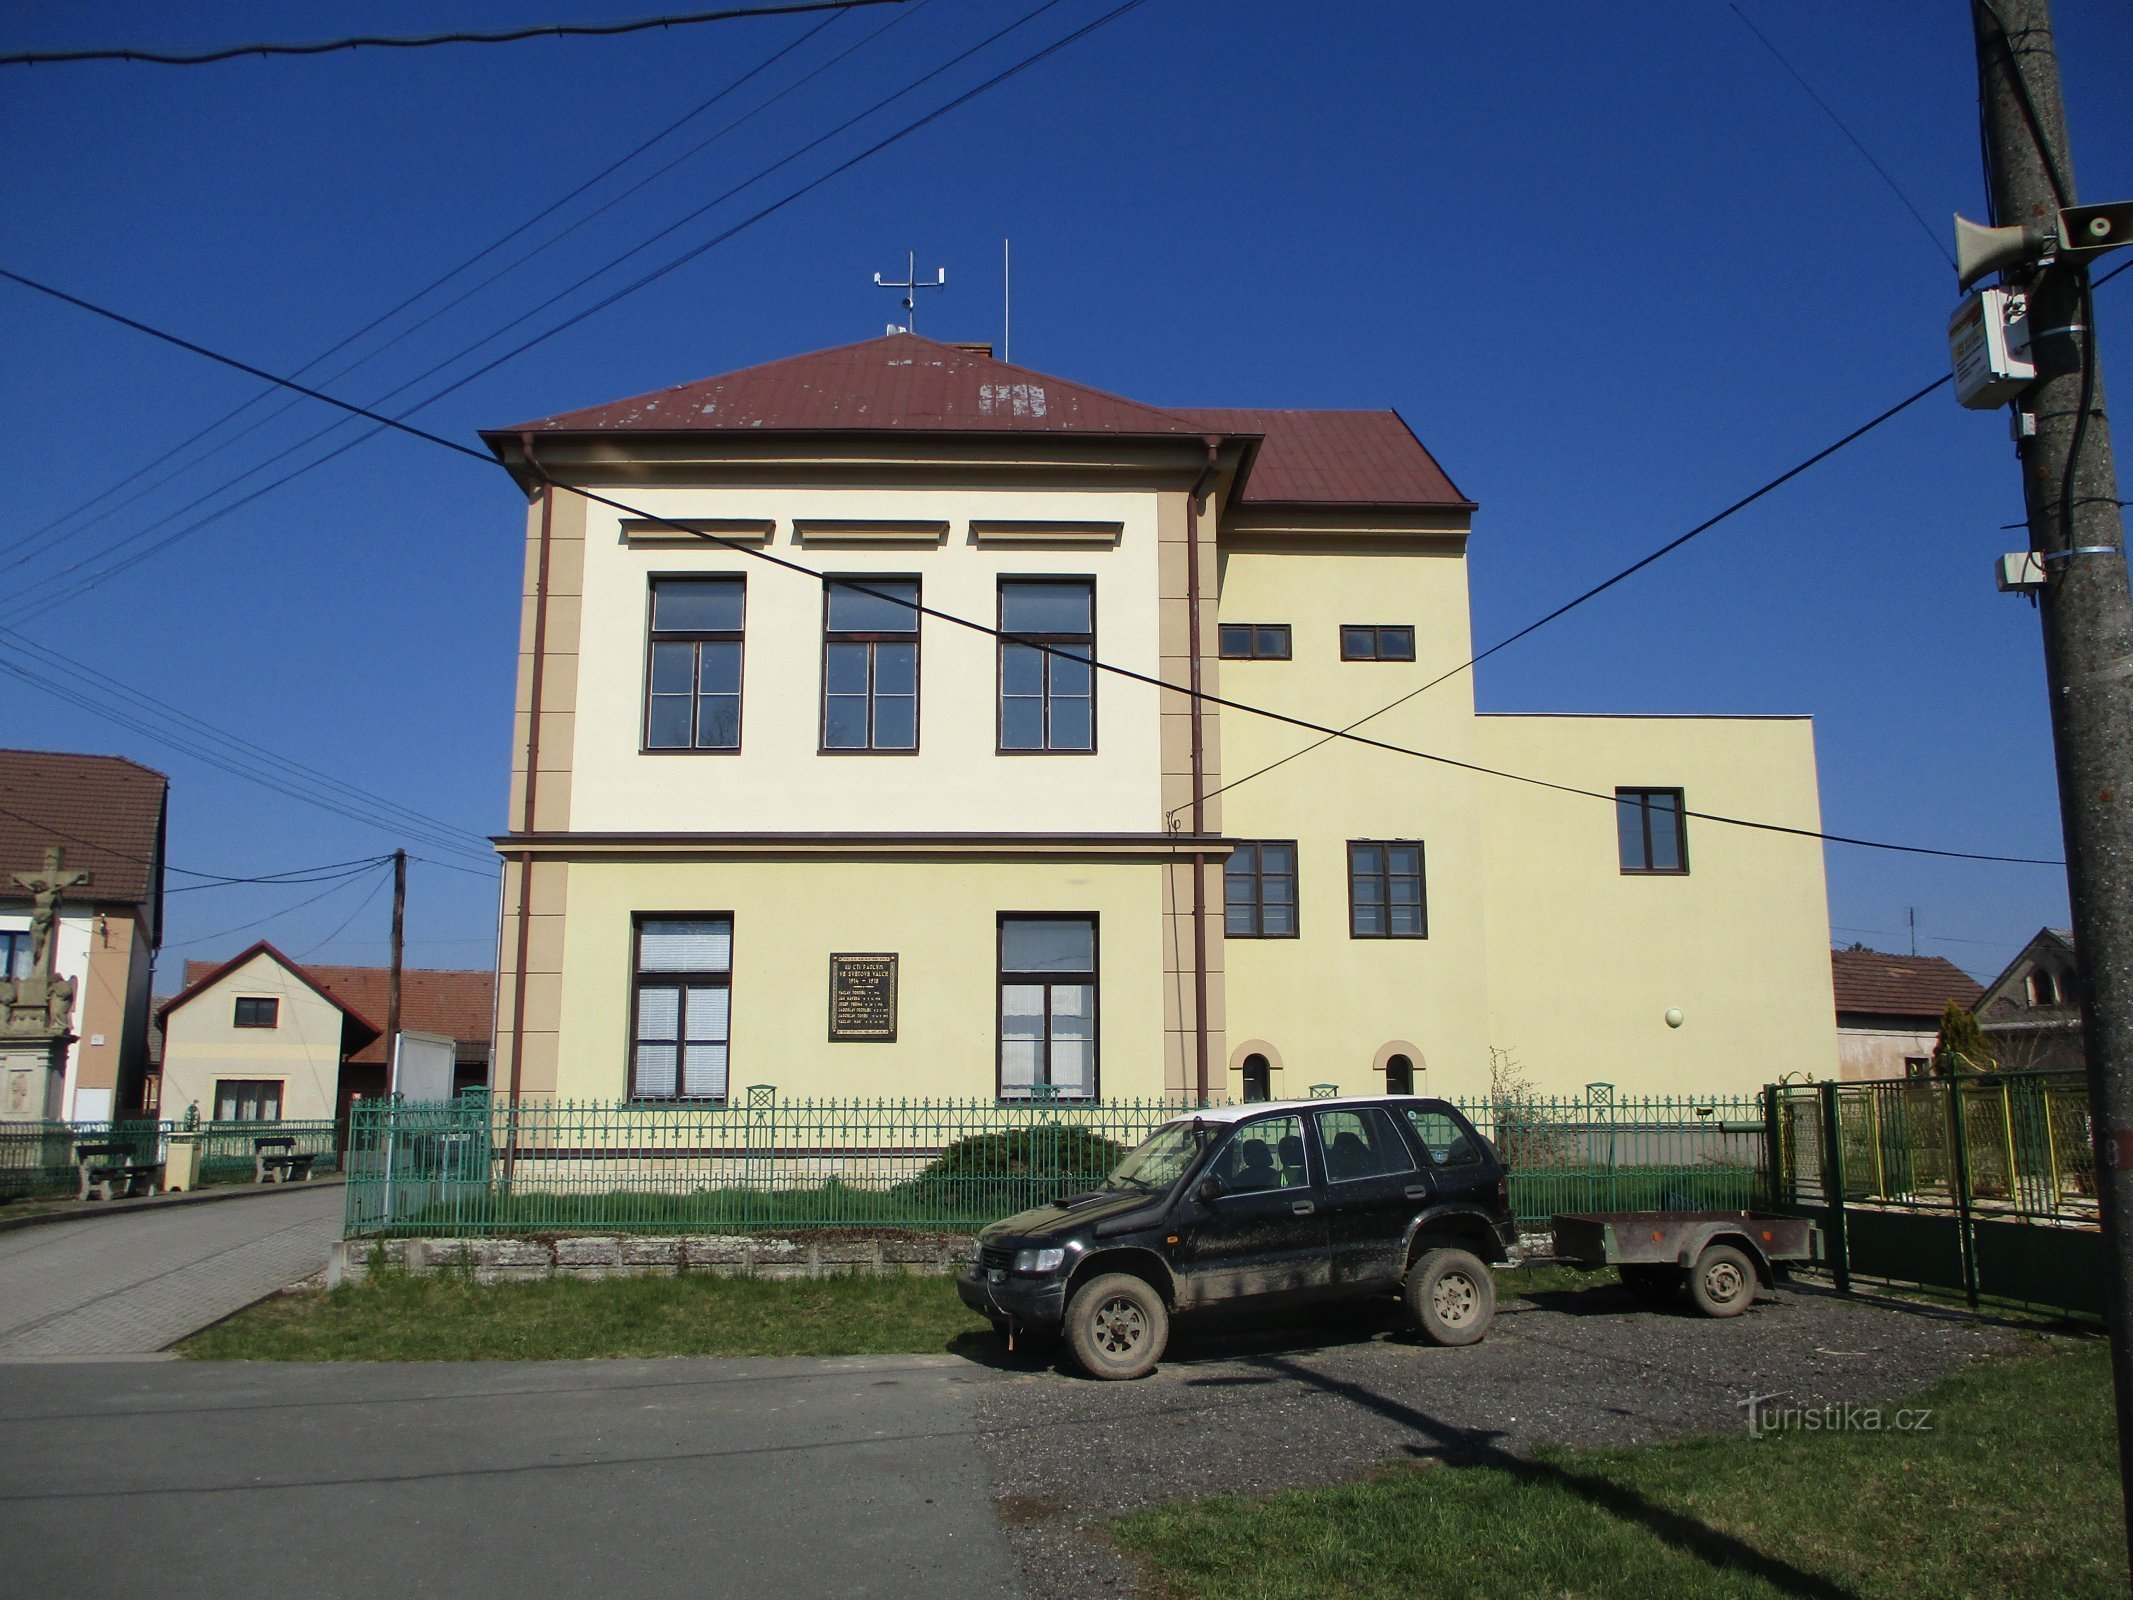 School met uitbreiding (Račice nad Trotinou, 2.4.2020 april XNUMX)